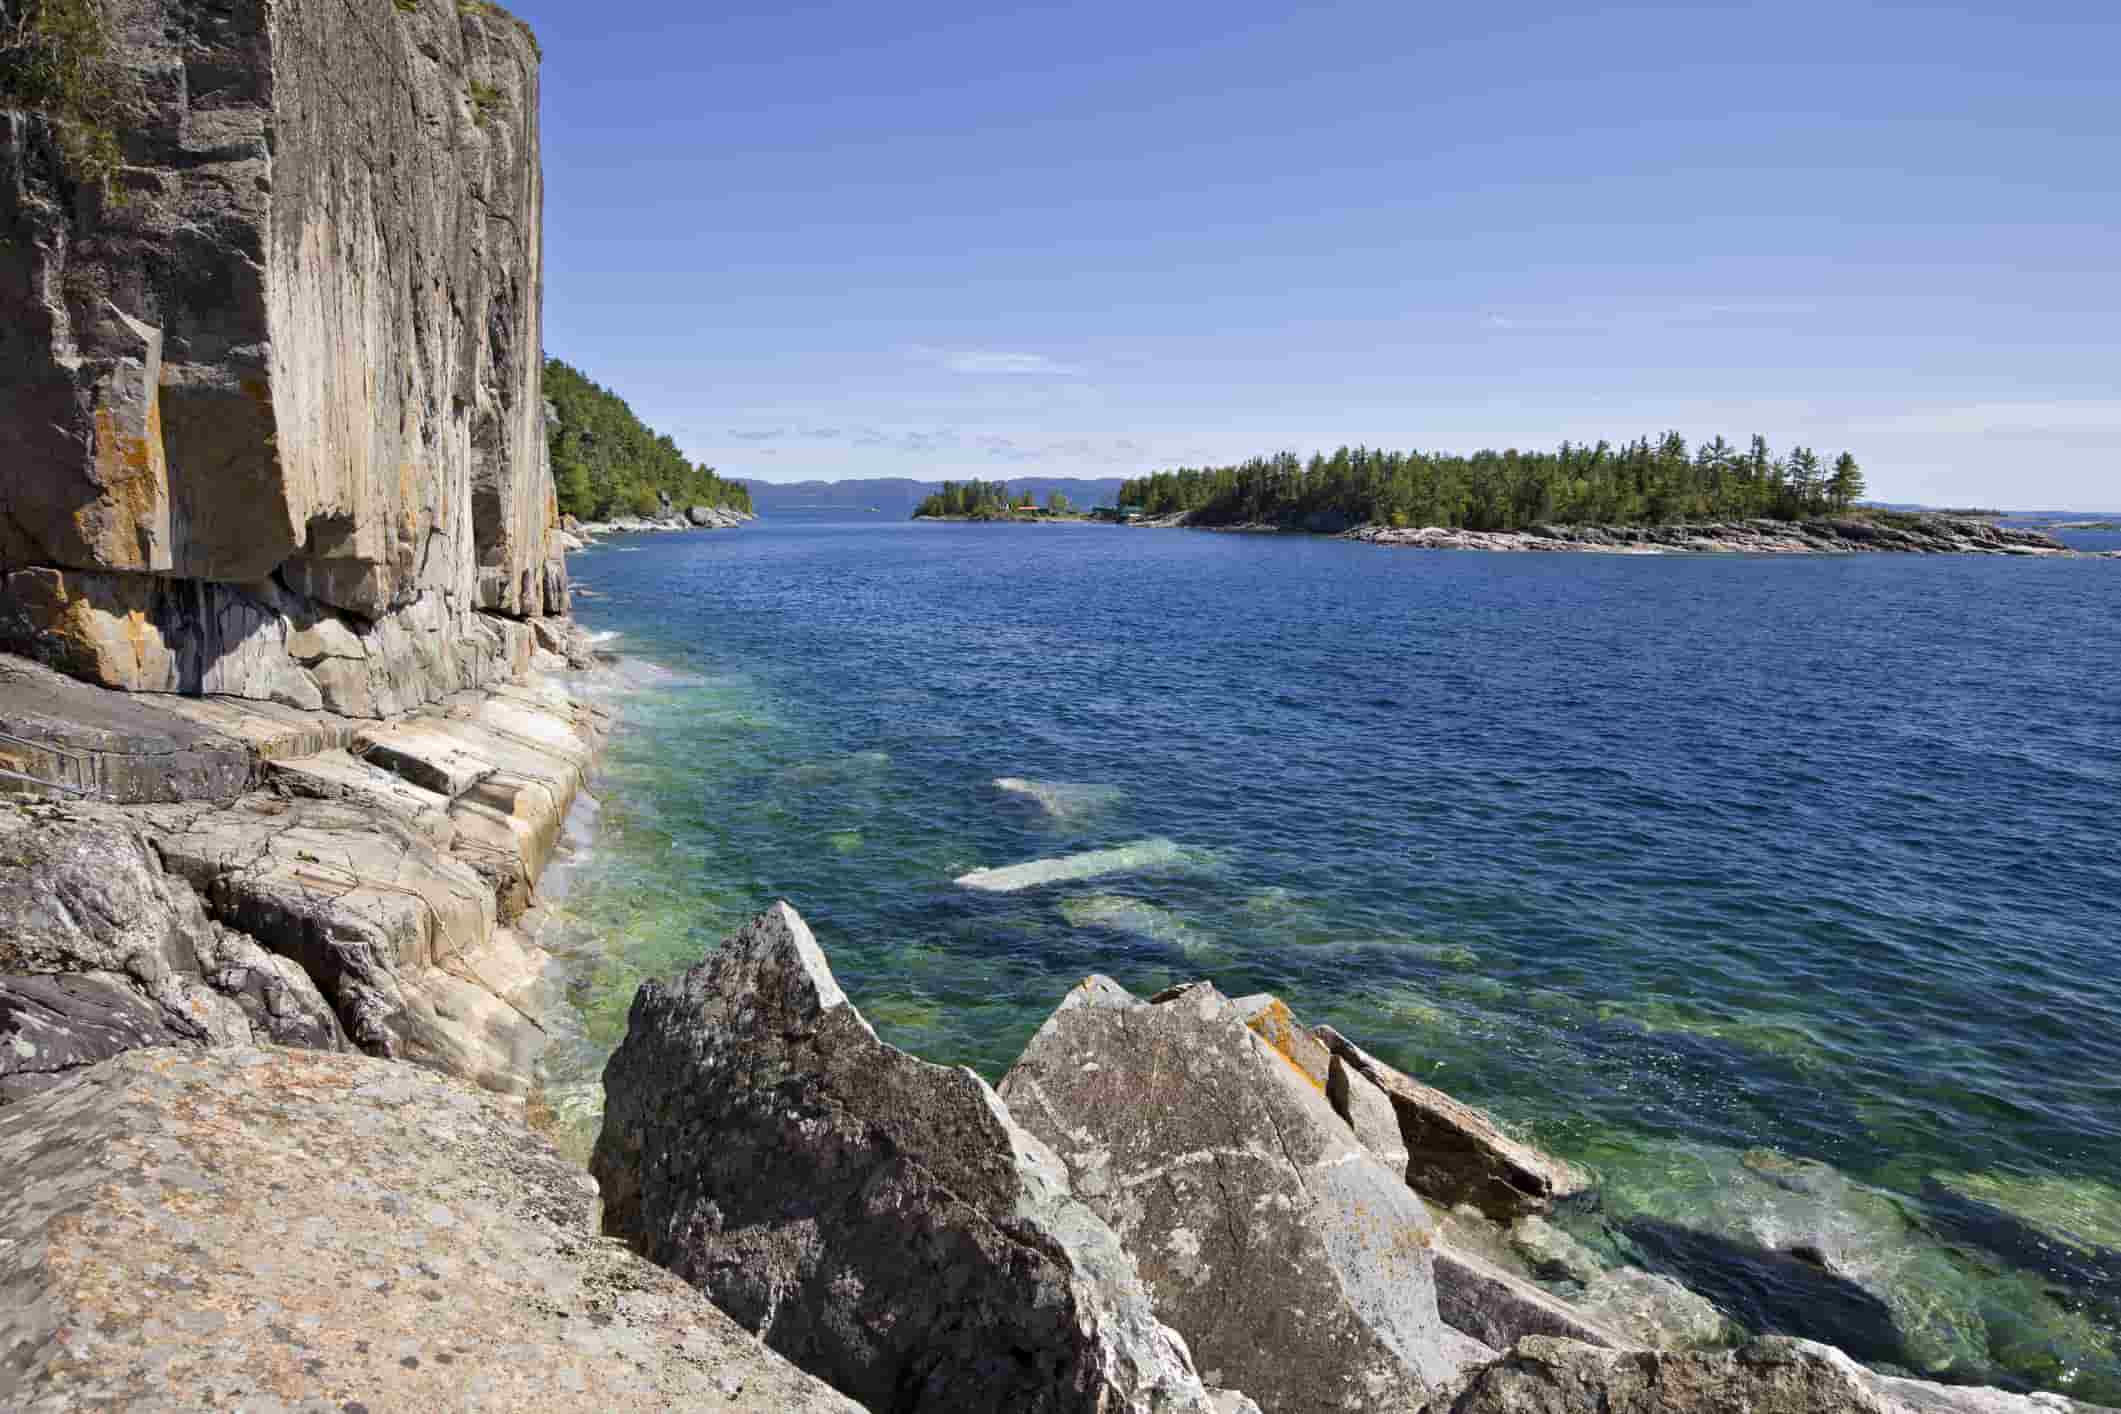 Agawa Bay, Lake Superior Provincial Park, Ontario.